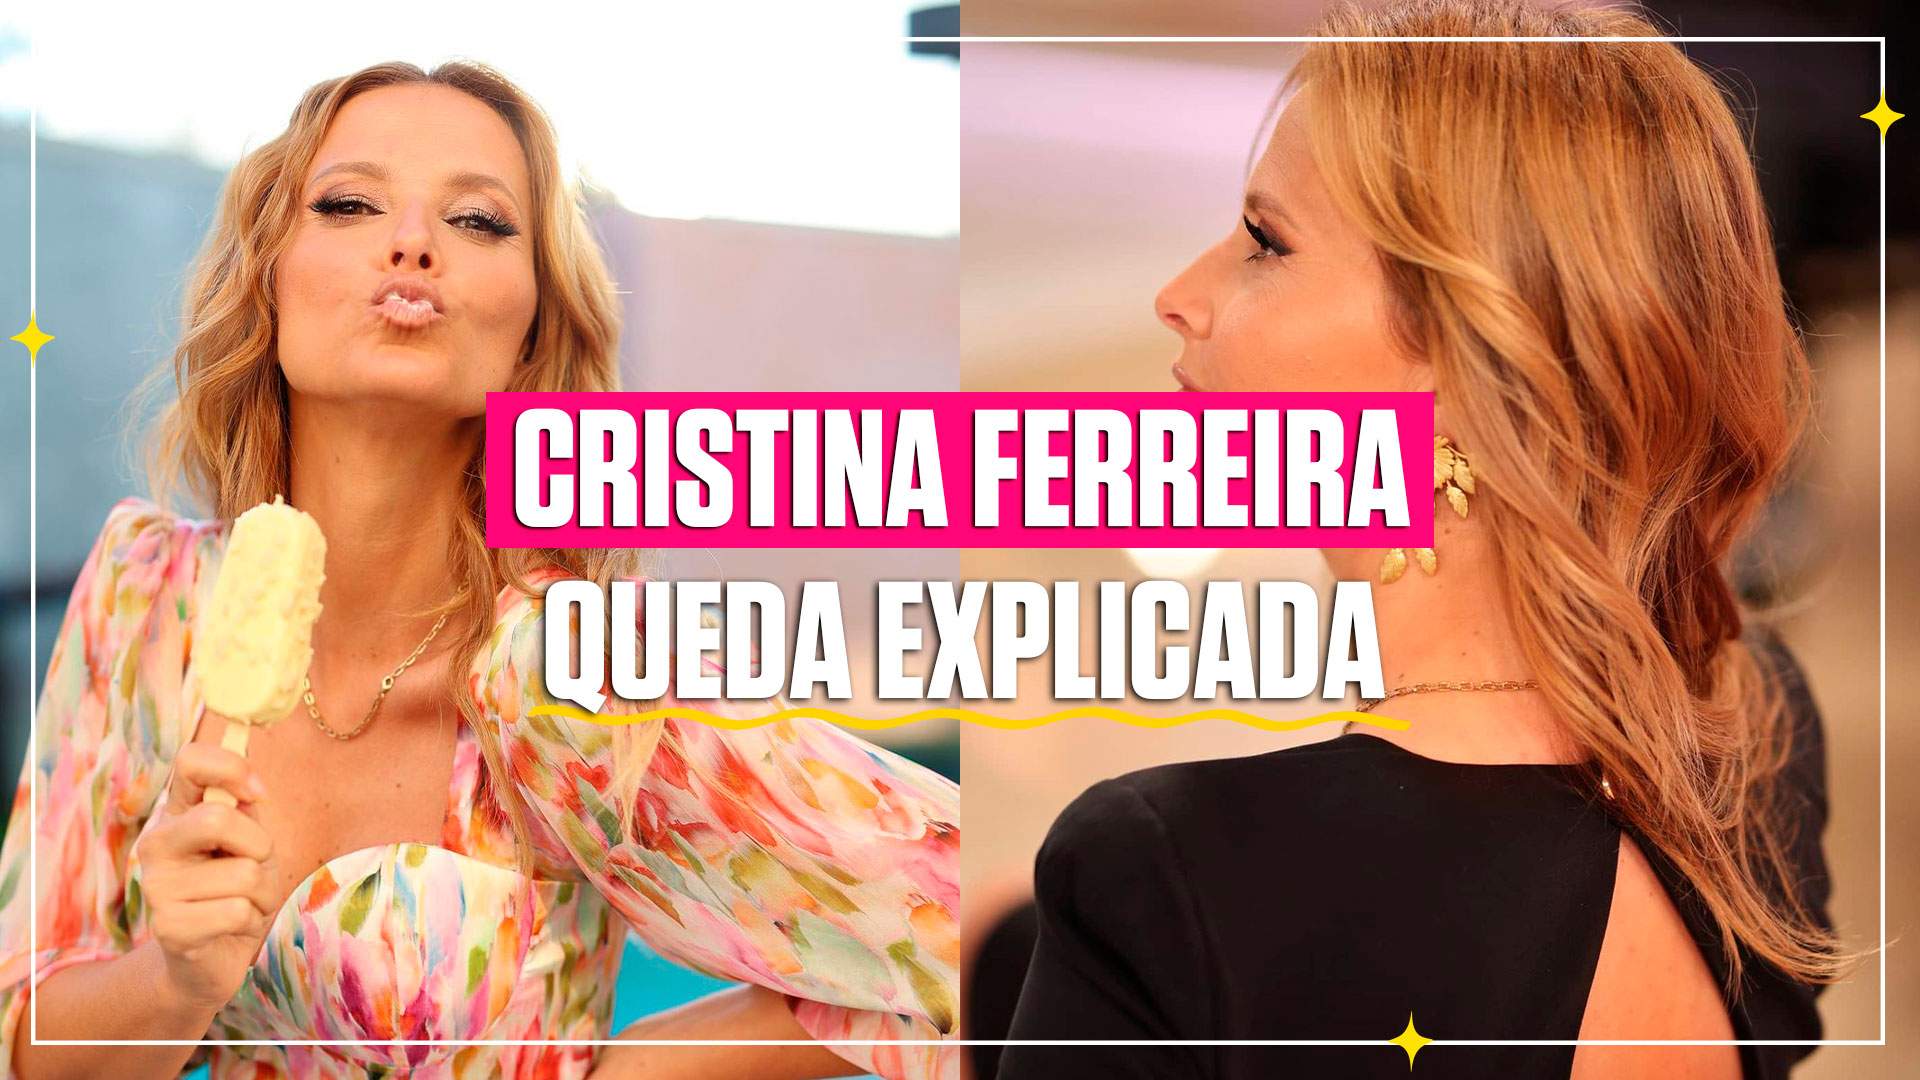 Cristina Ferreira em queda, TV7Dias explica tudo!